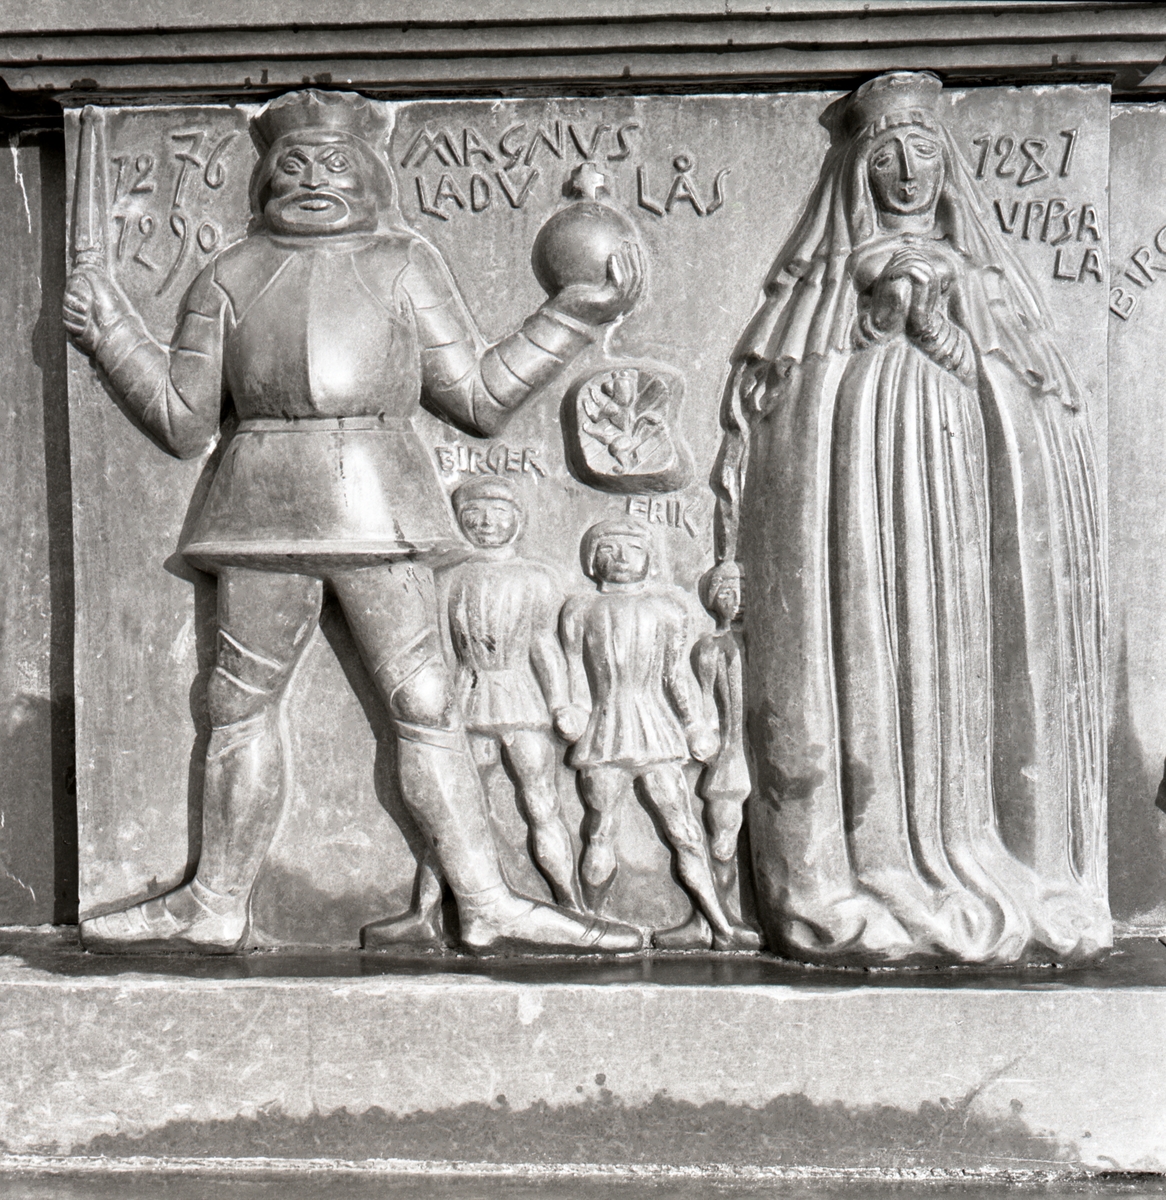 Detalj av sockeln på Folkungabrunnen: Magnus (Birgersson) Ladulås kung 1275-1290 - reliefen visar Magnus med sin drottning Helvig och sönerna Birger, Erik och Valdemar, vilka efter faderns död kommer att iscensätta nästa brödrastrid i form av Håtunaleken (1306) och Nyköpings gästabud (1317).
Folkungabrunnen med Folke Filbyter, skulpturen uppförd av Carl Milles, invigdes 1927. Inspirationskälla till detta verk var Verner von Heidenstams roman Folkungaträdet, där Folkungaättens undergång skildras. Folke Filbyter - ättens stamfader - avbildas, när han till häst letar efter sin bortrövade sonson. Det 16 meter långa brunnskaret i svart granit, fungerande som en barriär mellan torget och gatan, återger med sina reliefer episoder ur Folkungatidens historia.